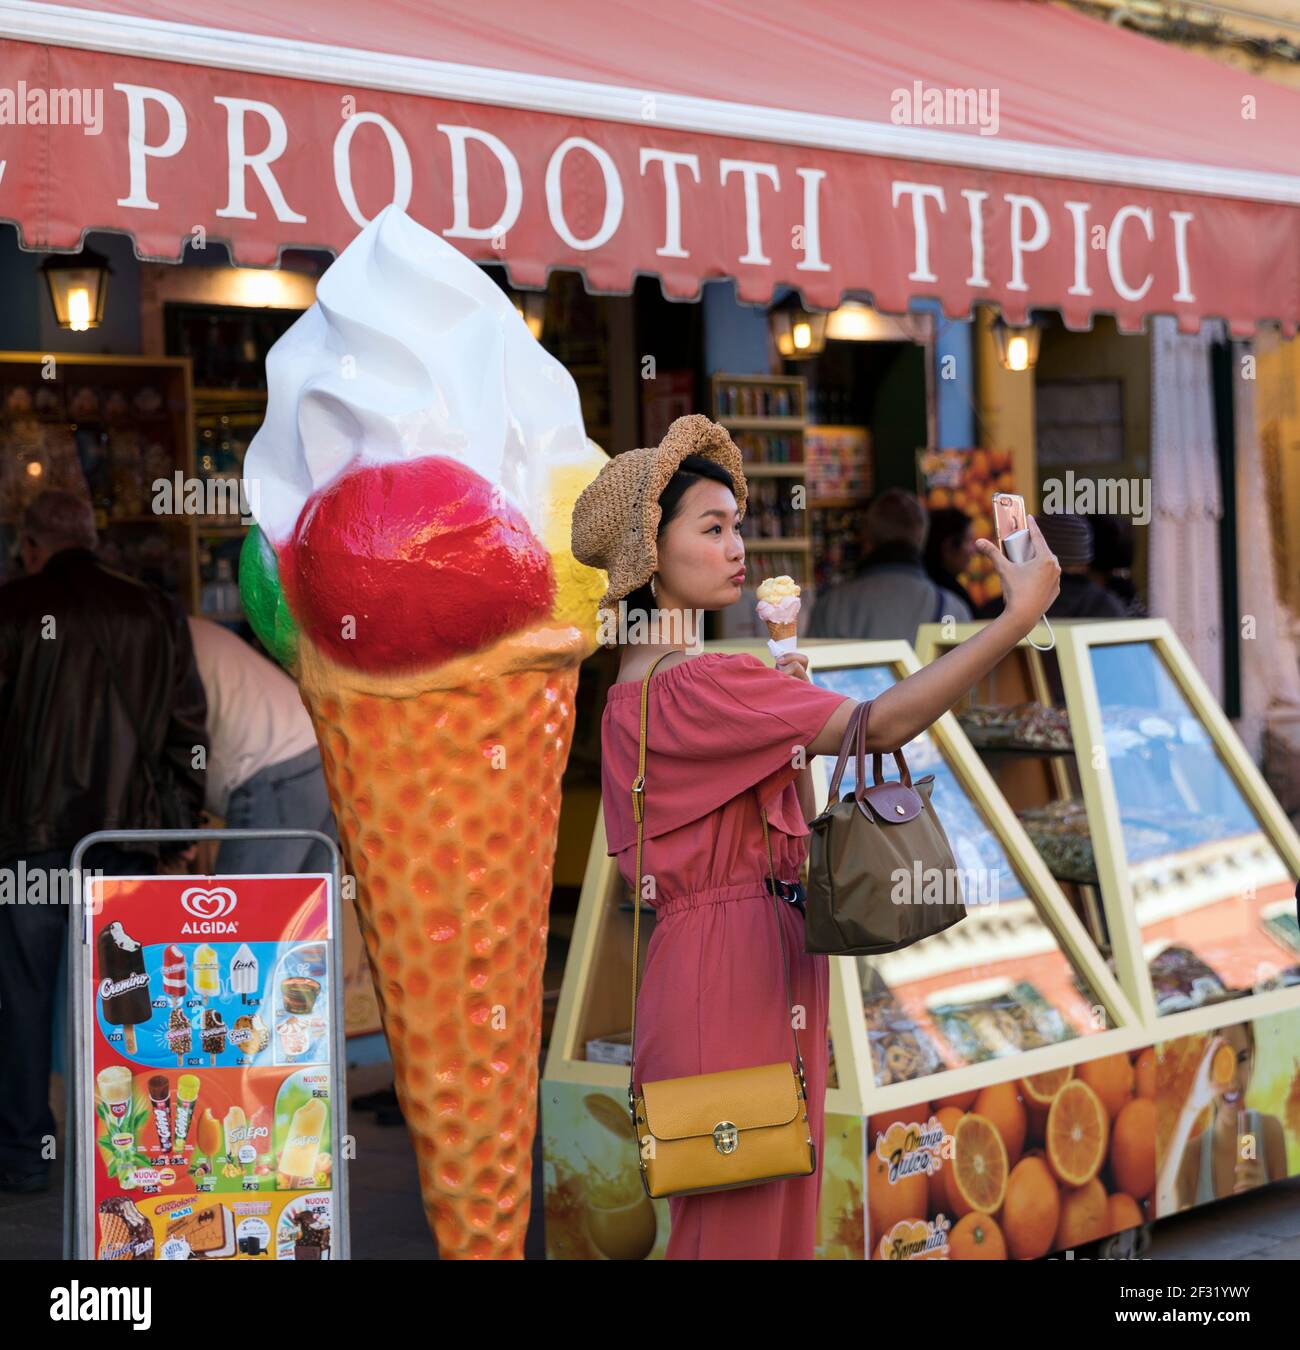 Italia,Venezia,Burano, giovane asiatica che prende un selfie con un gelato Foto Stock